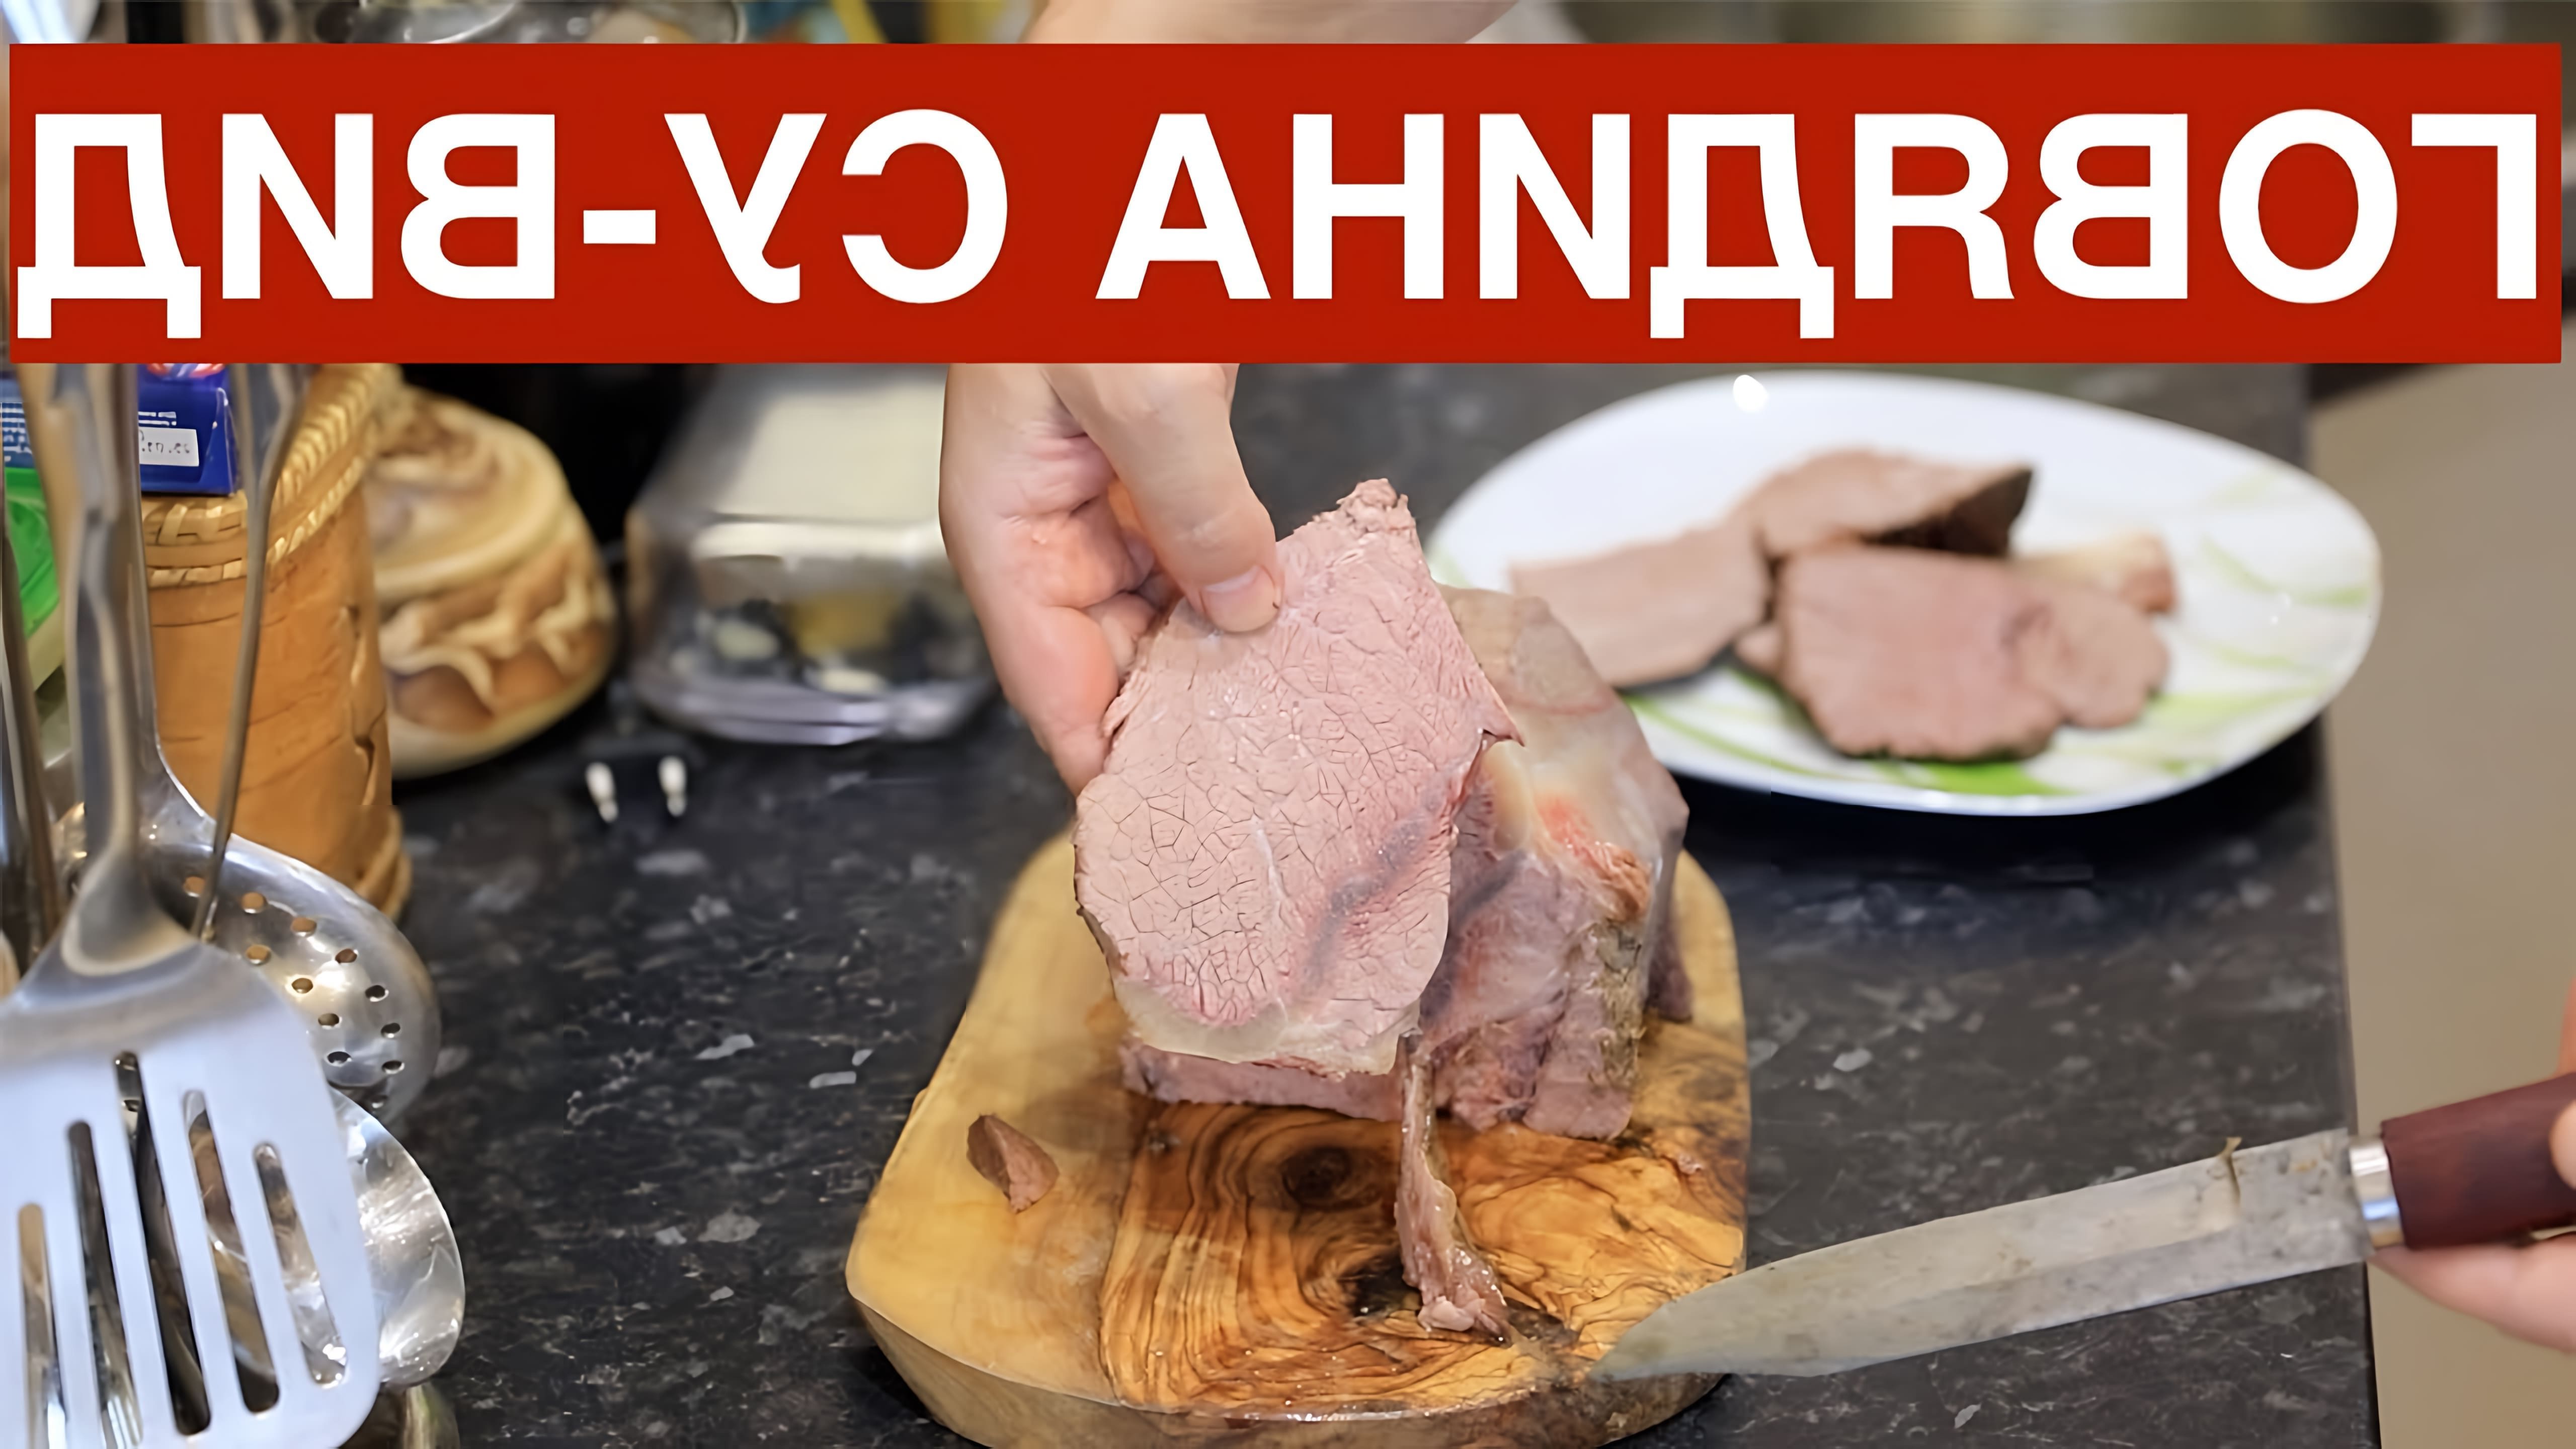 В данном видео демонстрируется процесс приготовления говядины су-вид (sous vide) без использования вакуума